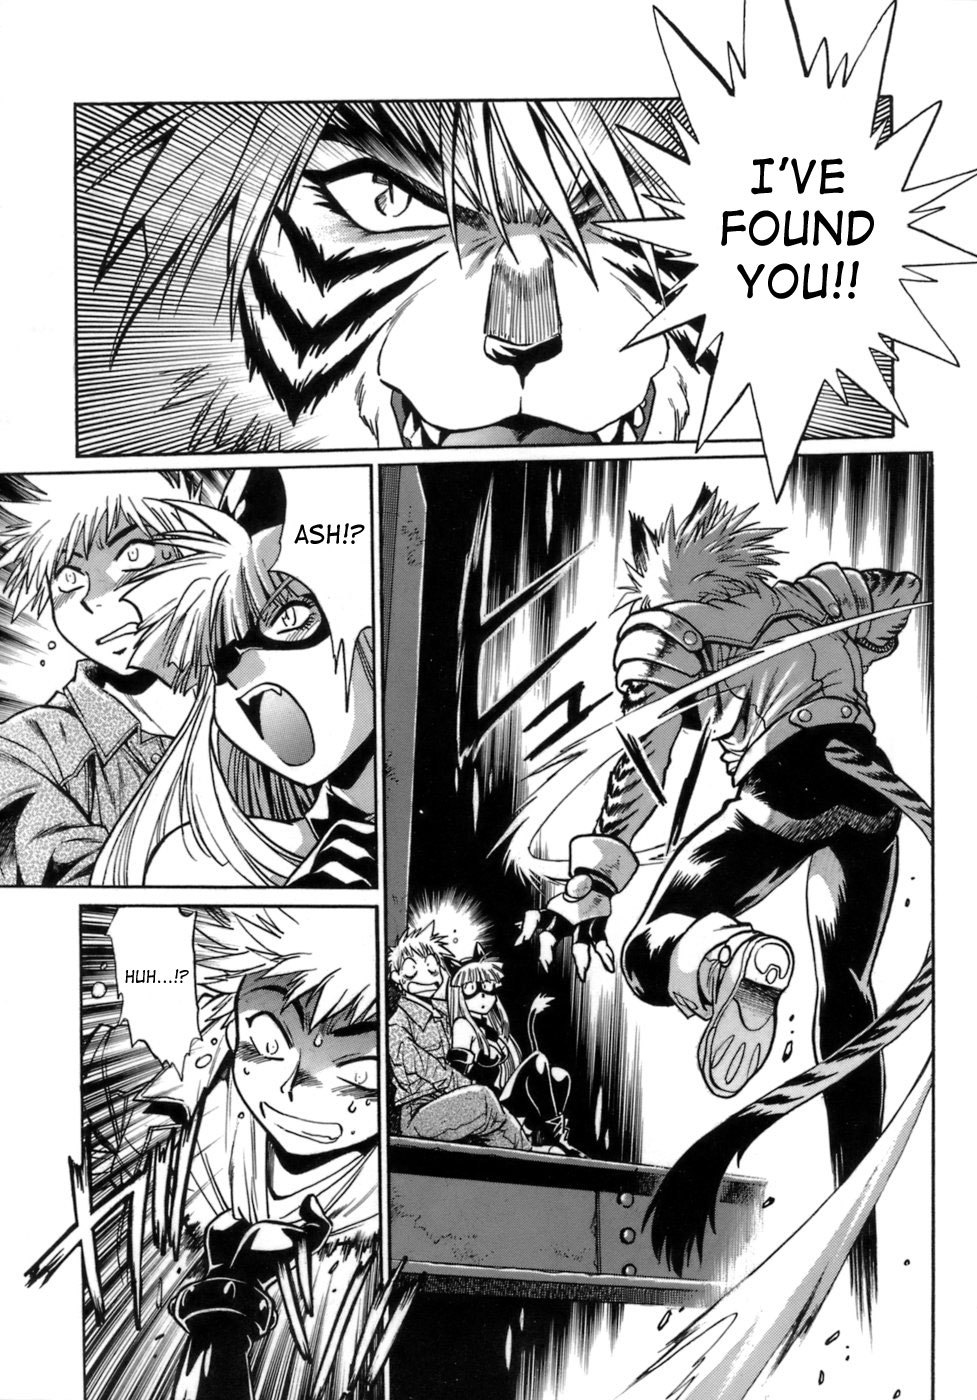 Tail Chaser Vol.1 47 hentai manga